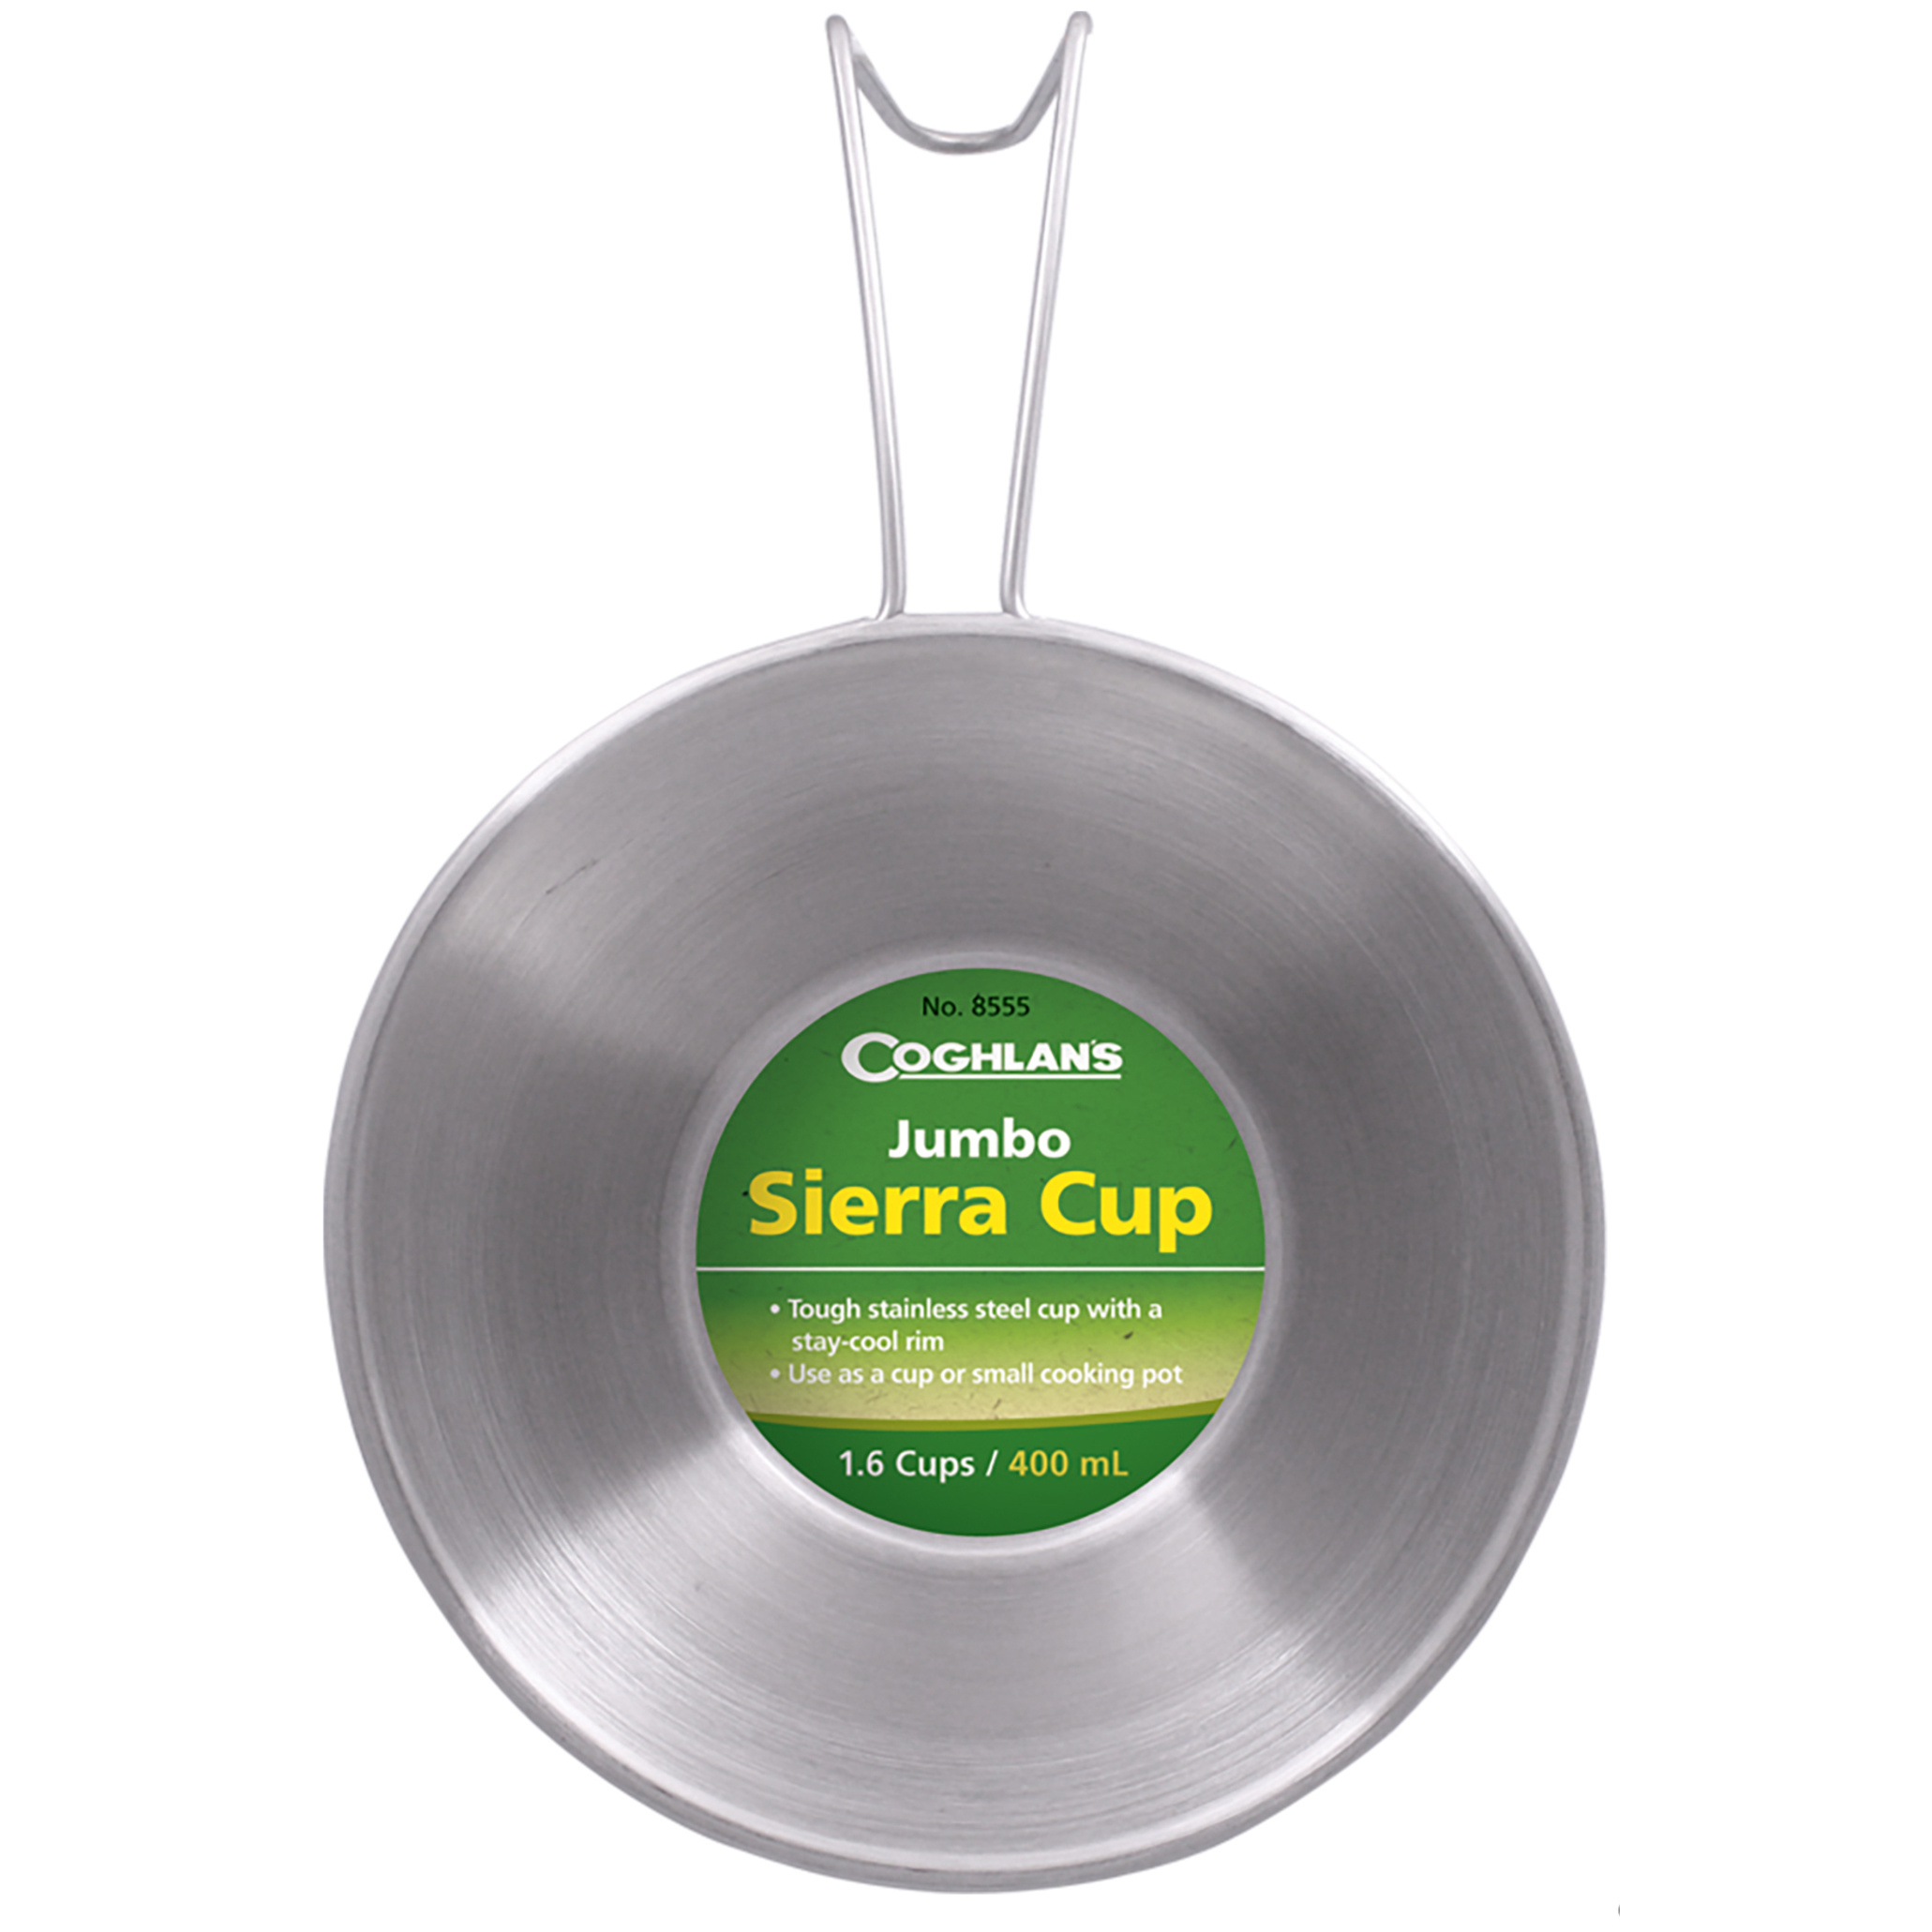 Jumbo Sierra Cup